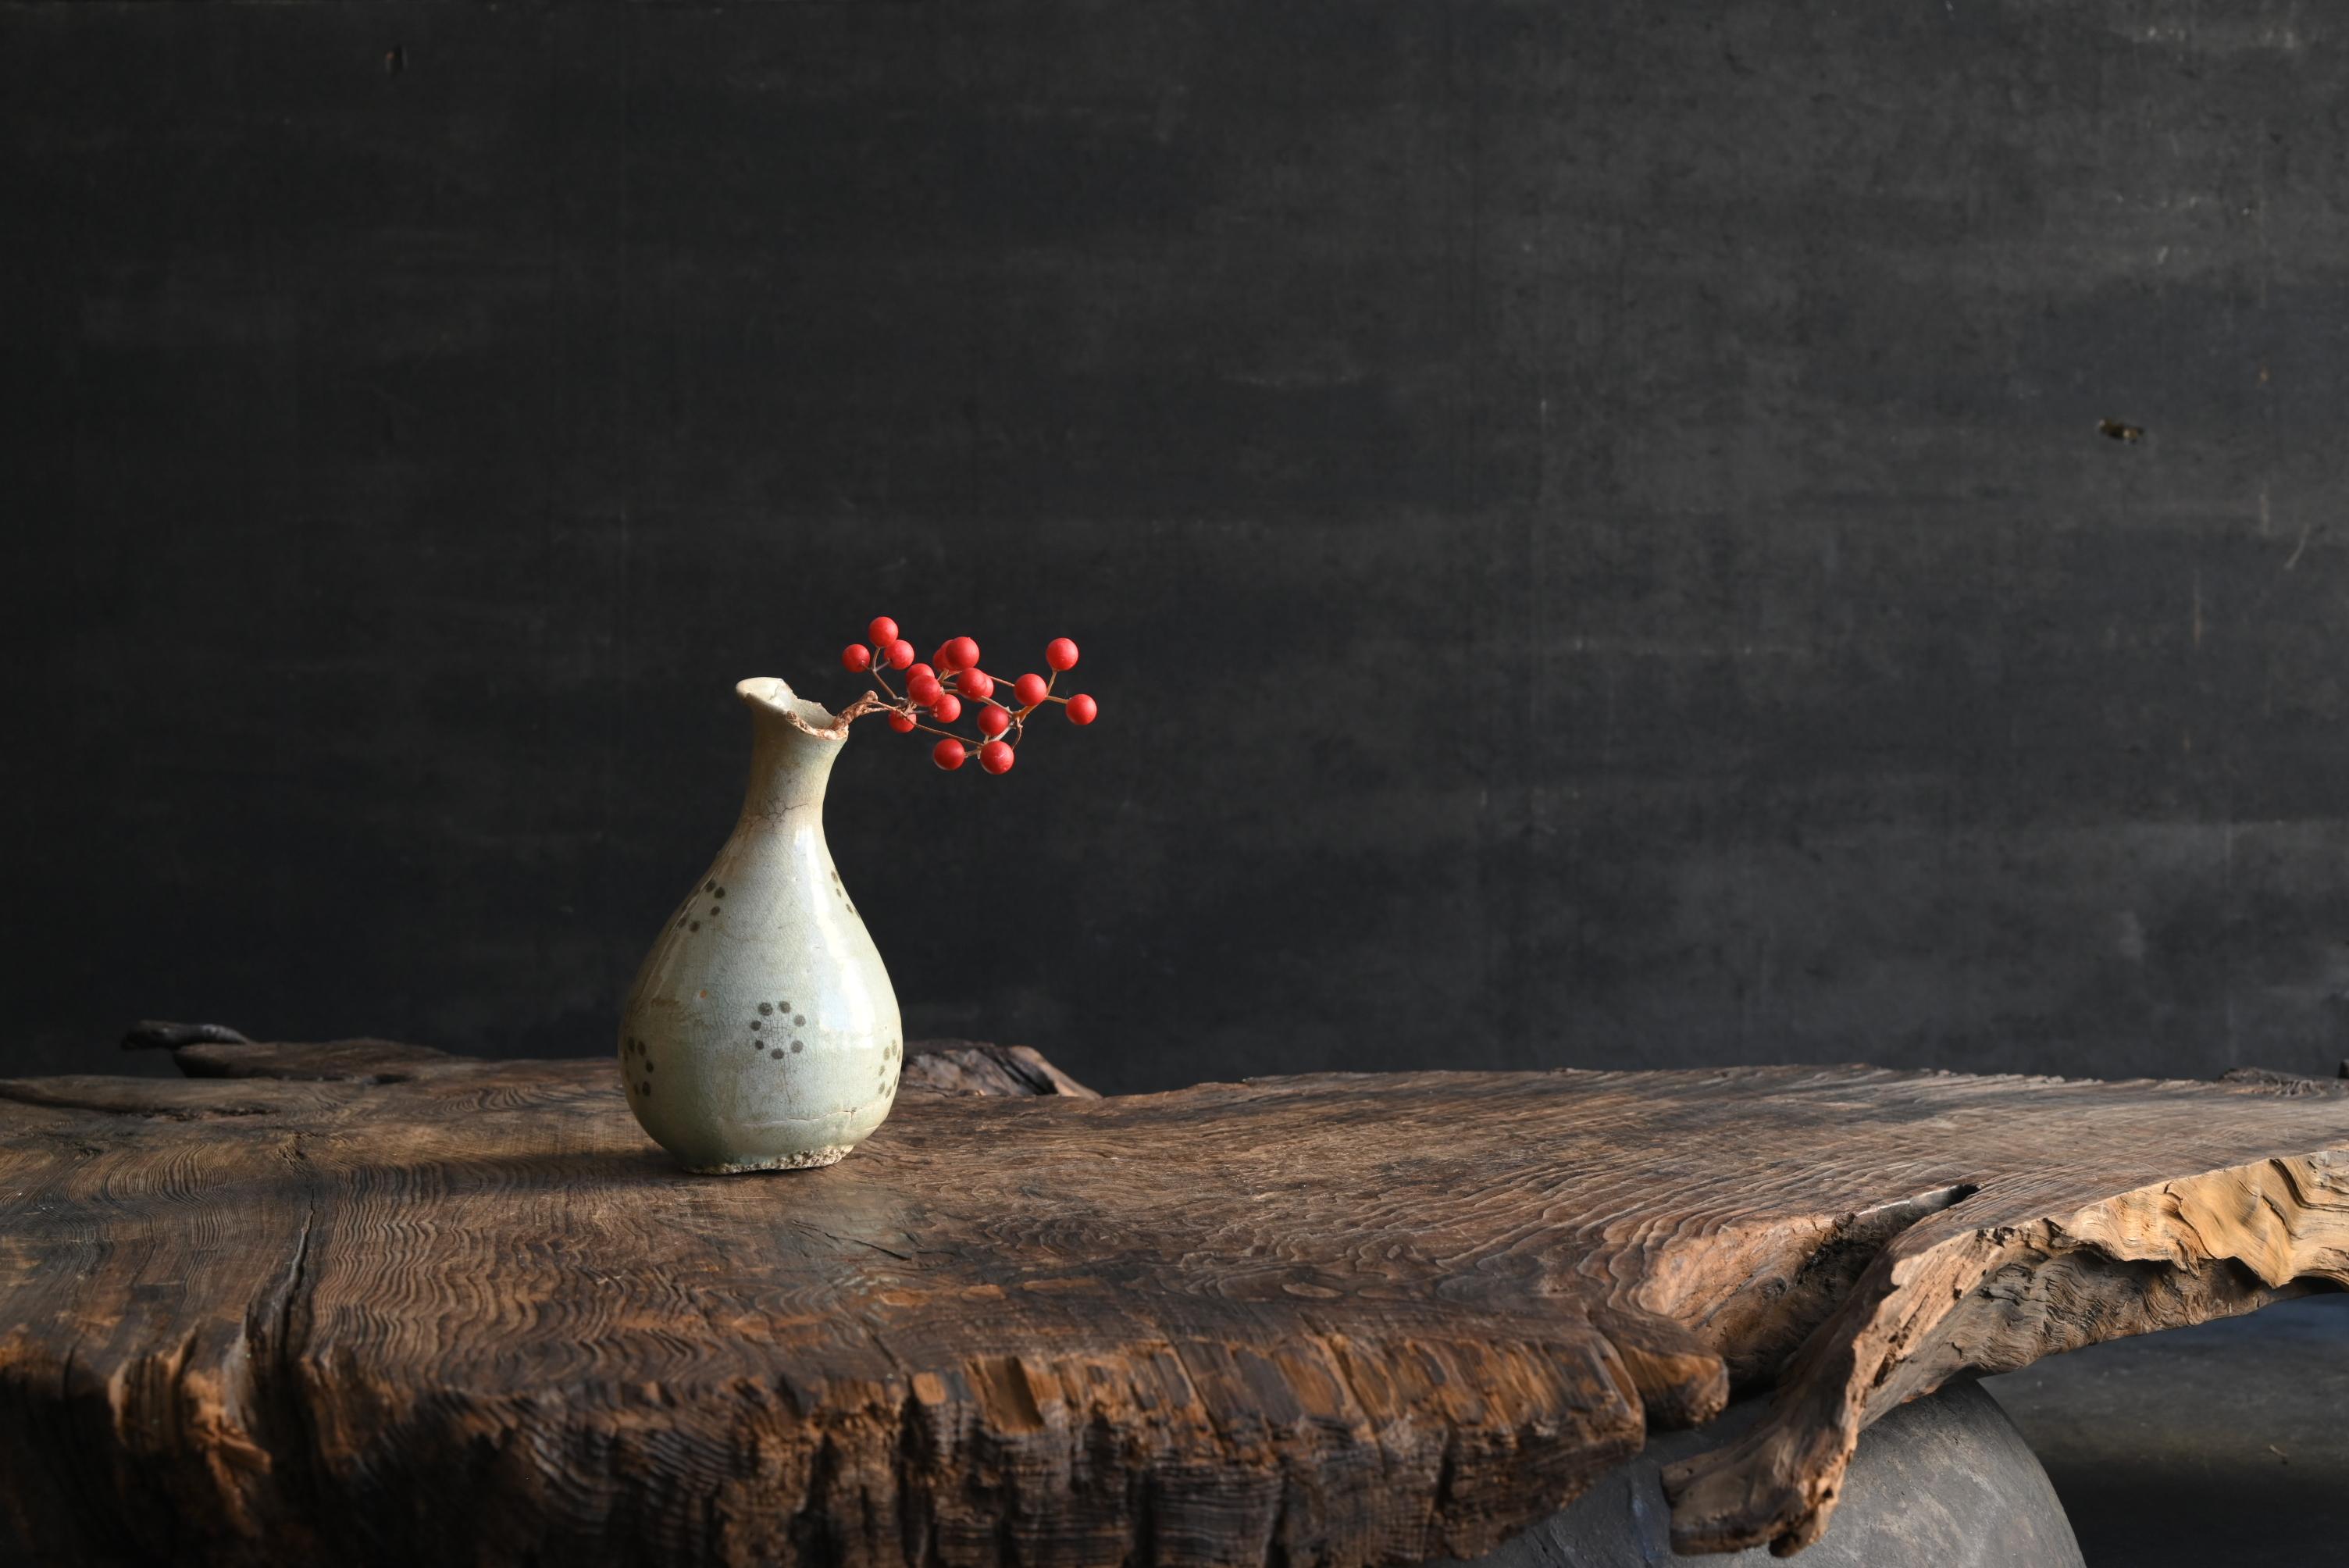 Ich möchte koreanische antike Keramik mit einem sehr seltenen Design vorstellen.
Dies ist ein vasenförmiges Gefäß aus der frühen Joseon-Dynastie in Korea.
Es wird vermutet, dass dieses Gefäß ursprünglich mit Öl gefüllt war.

Die Form des Behälters